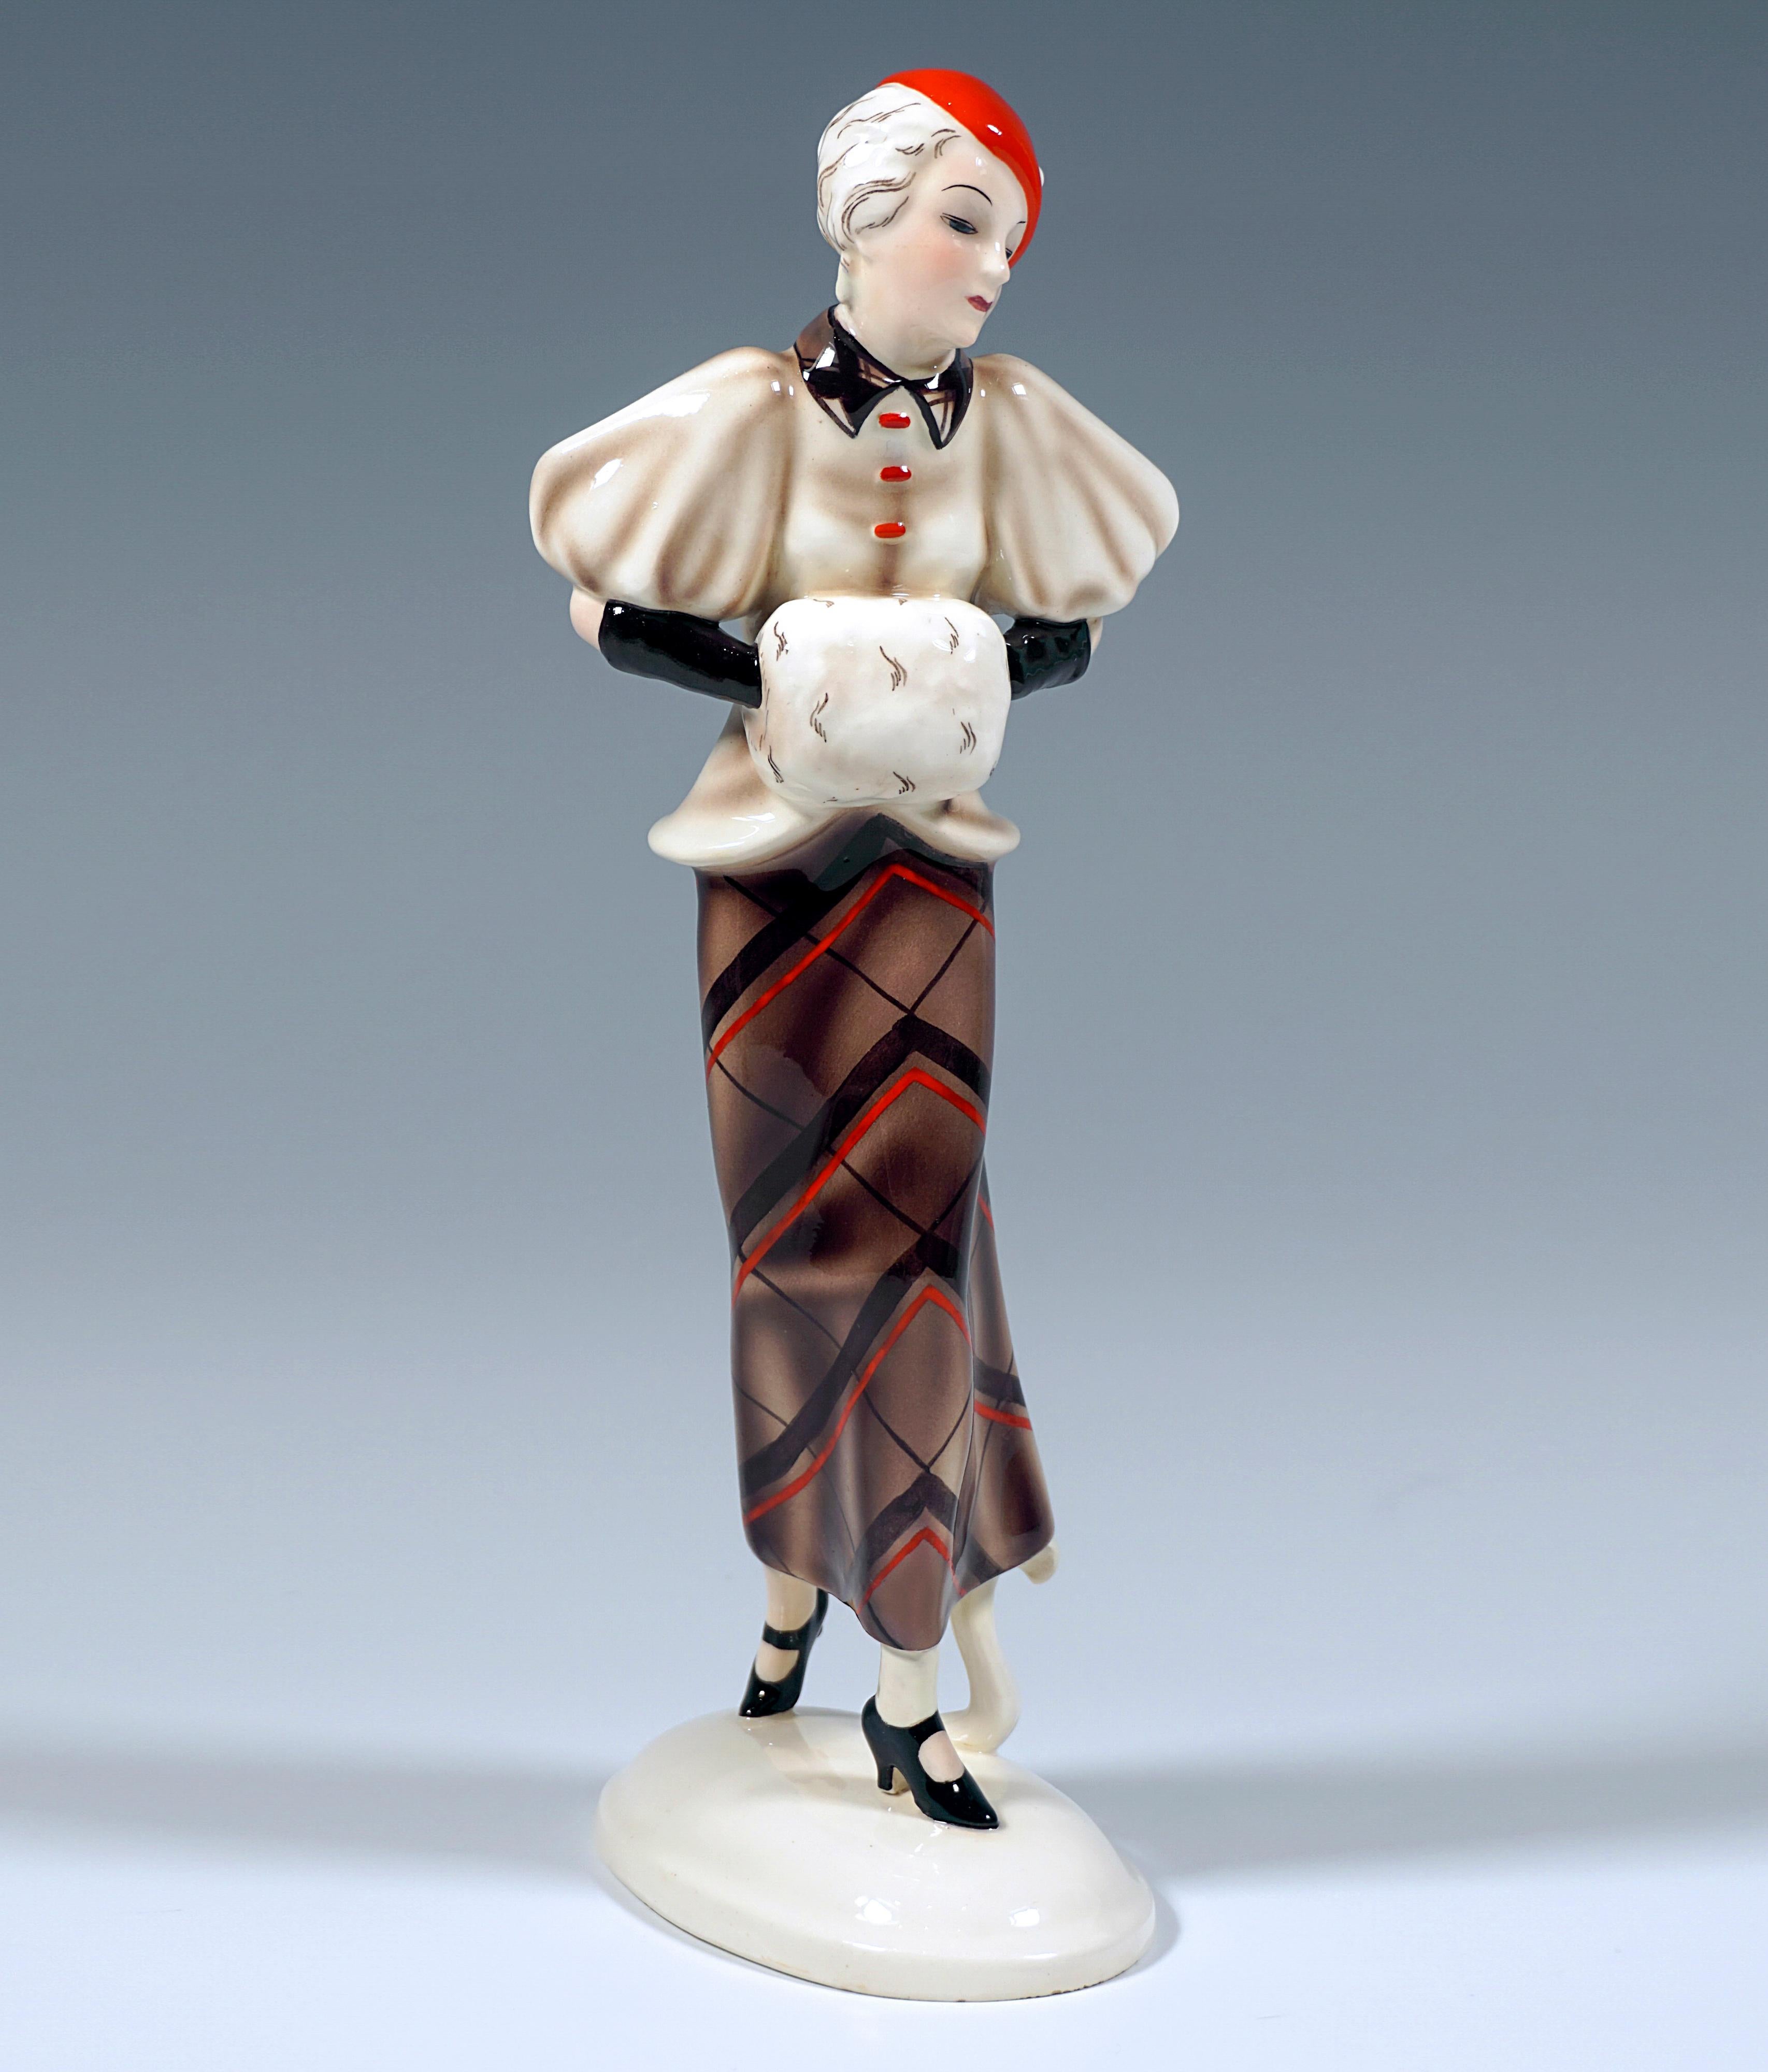 Sehr seltene Goldscheider Keramikfigur aus den 1930er Jahren:
Junge hübsche Frau mit kurzen Haaren und einem roten Hut, einem beigefarbenen Umhang mit weiten Puffärmeln und einem langen, engen Rock mit einem großen, braun-roten Karomuster, die ihre